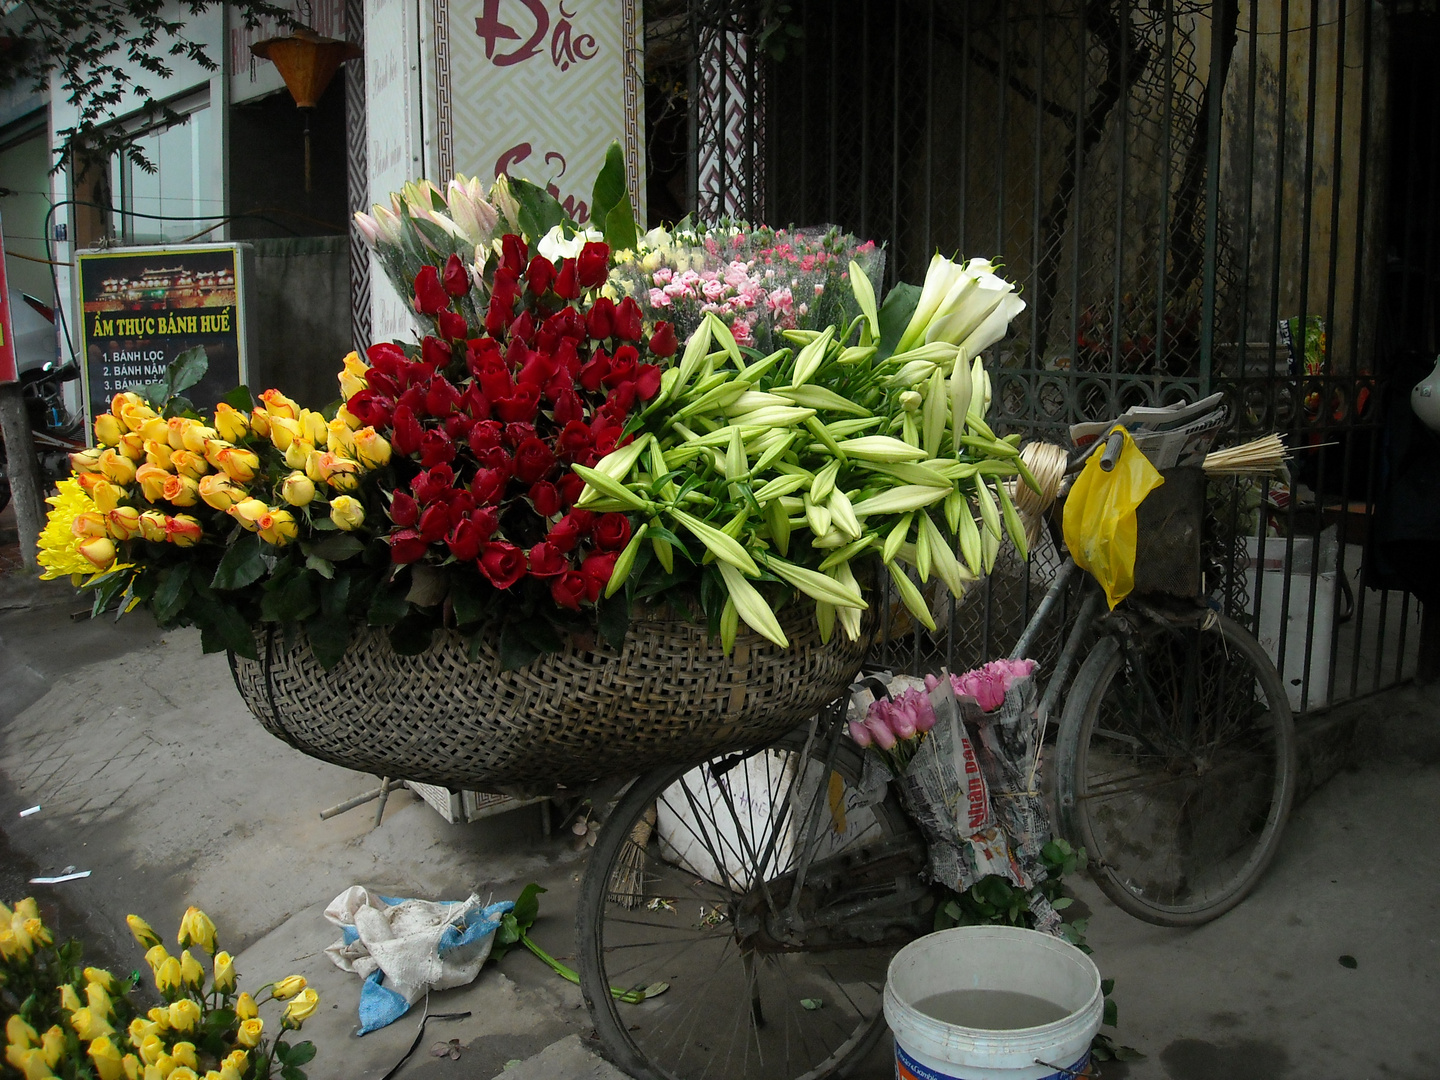 Verkauf von Blumen auf dem Fahrrad